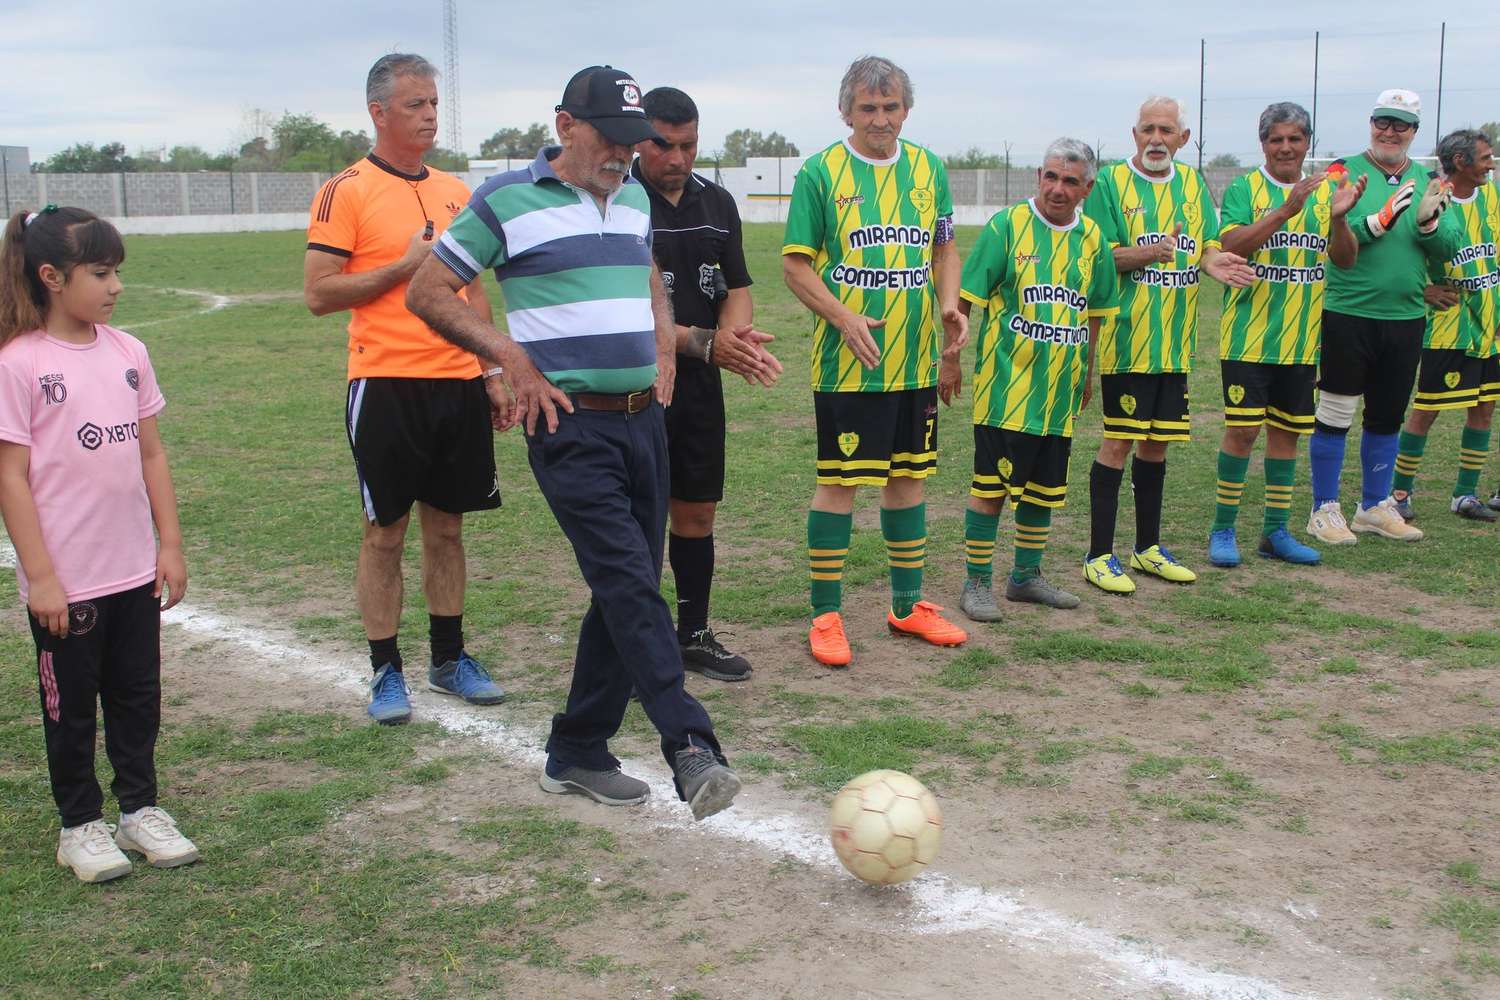 Una leyenda del fútbol gualeguayense: Daniel Ernesto Spandrio dando el puntapié inicial en cancha del estadio "5 de Octubre" de Urquiza para la tercera fecha. El "Mudo" Spandrio fue muy aplaudido.